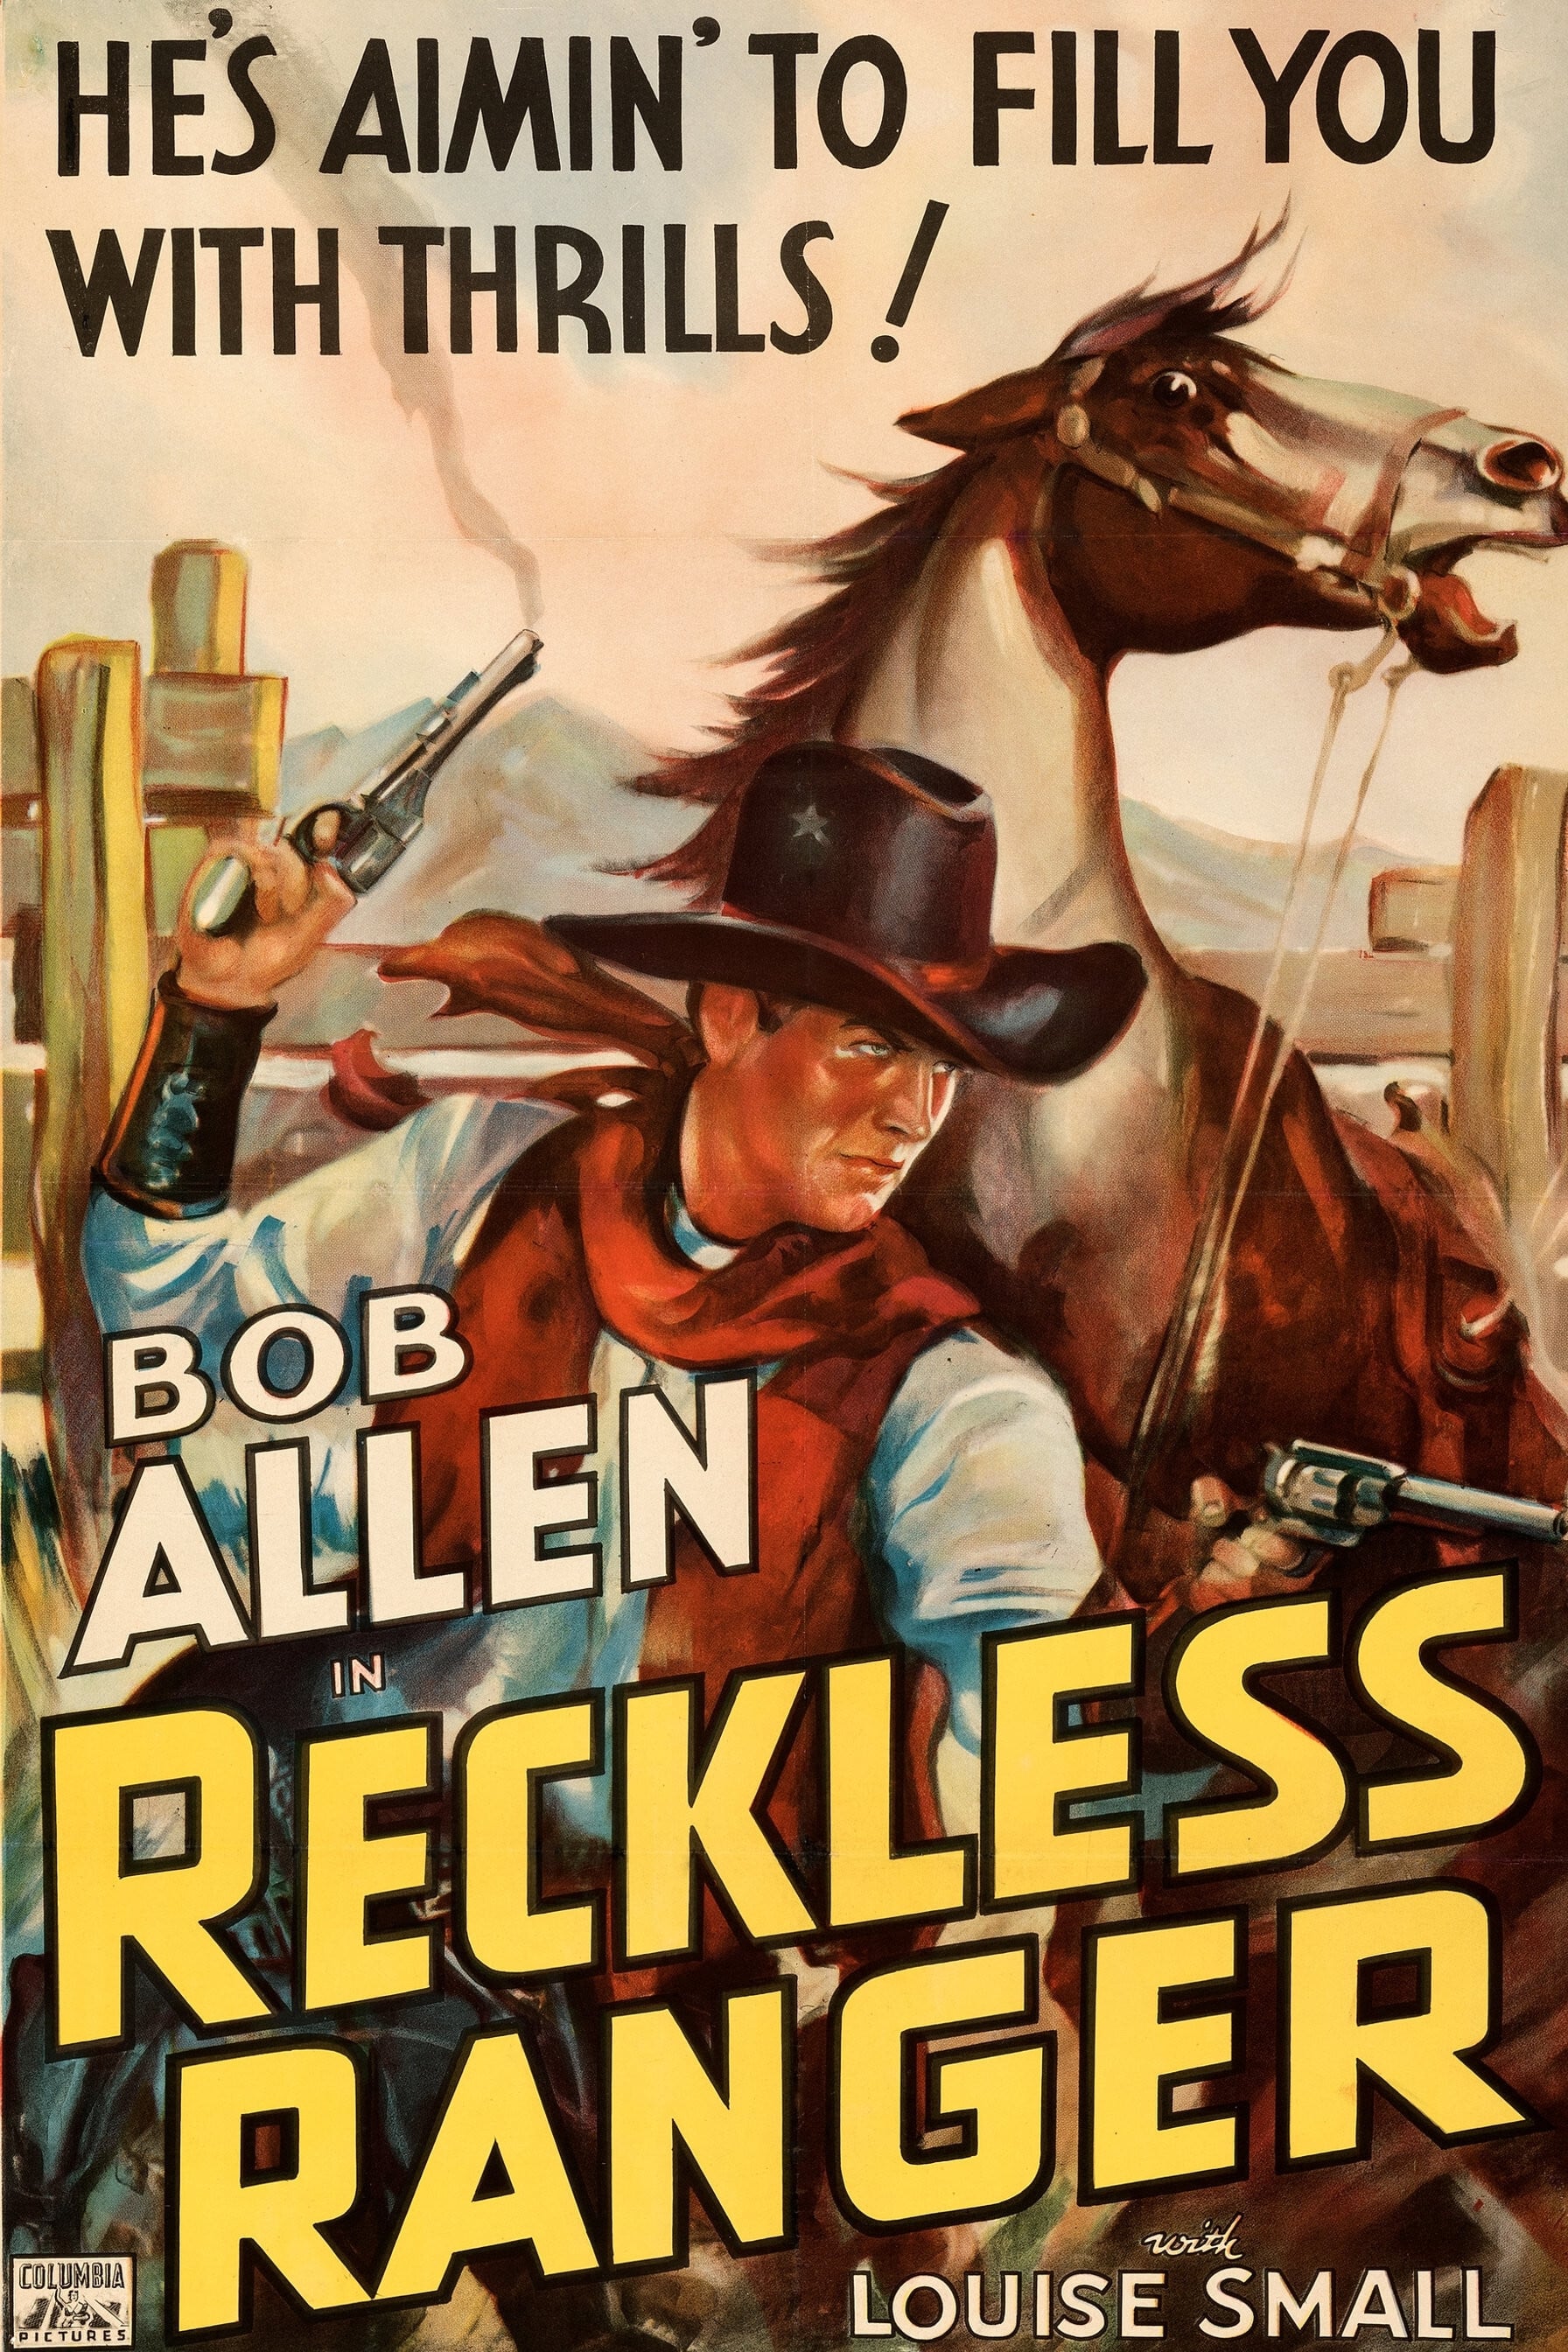 Reckless Ranger (1937)